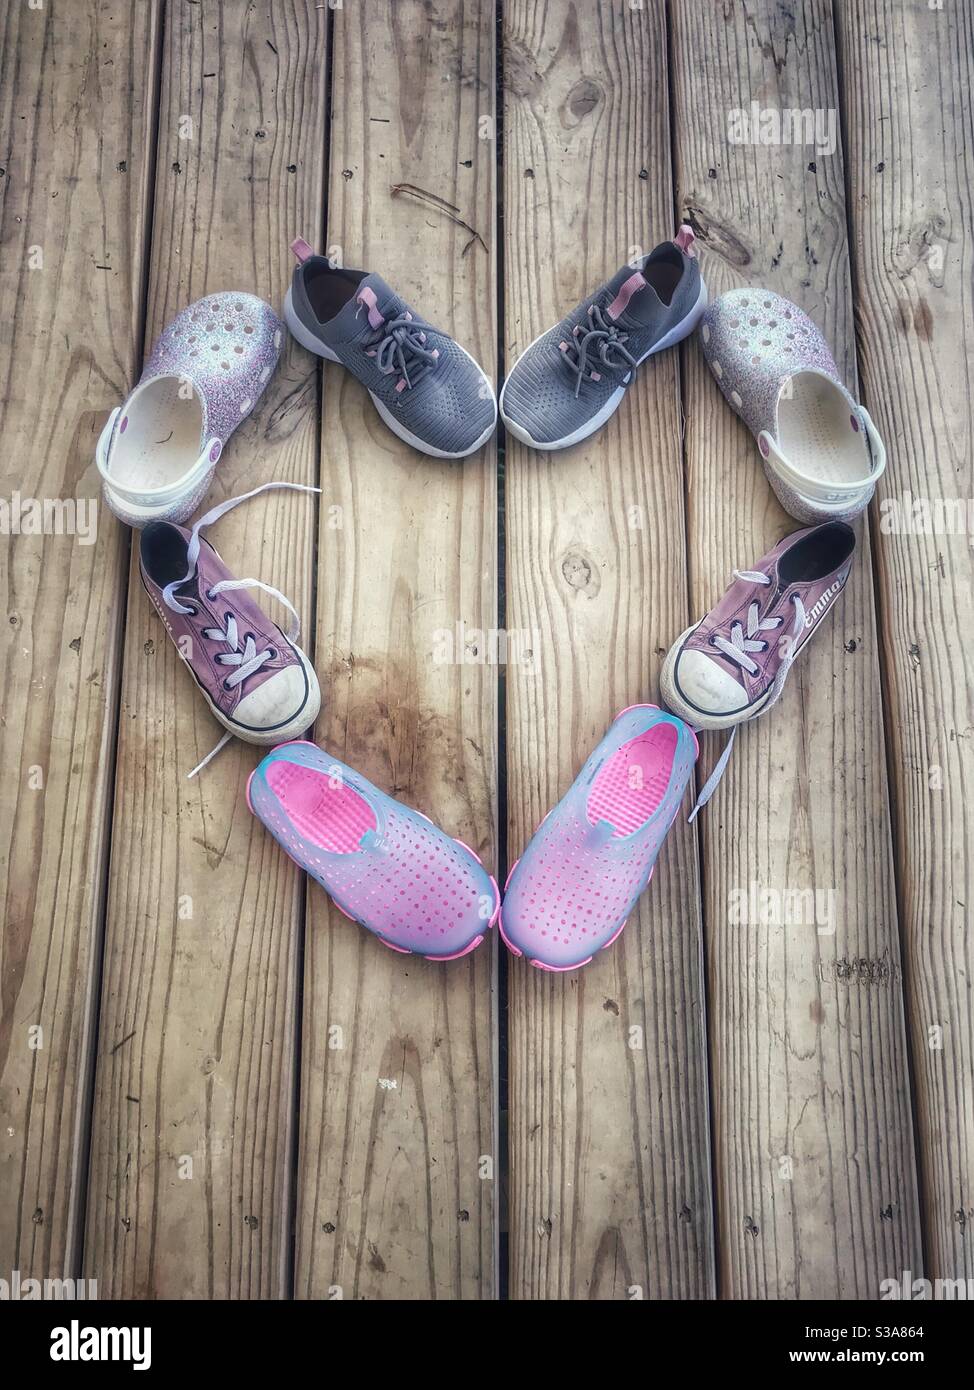 Chaussures pour filles disposées en forme de coeur sur une véranda en bois été Banque D'Images